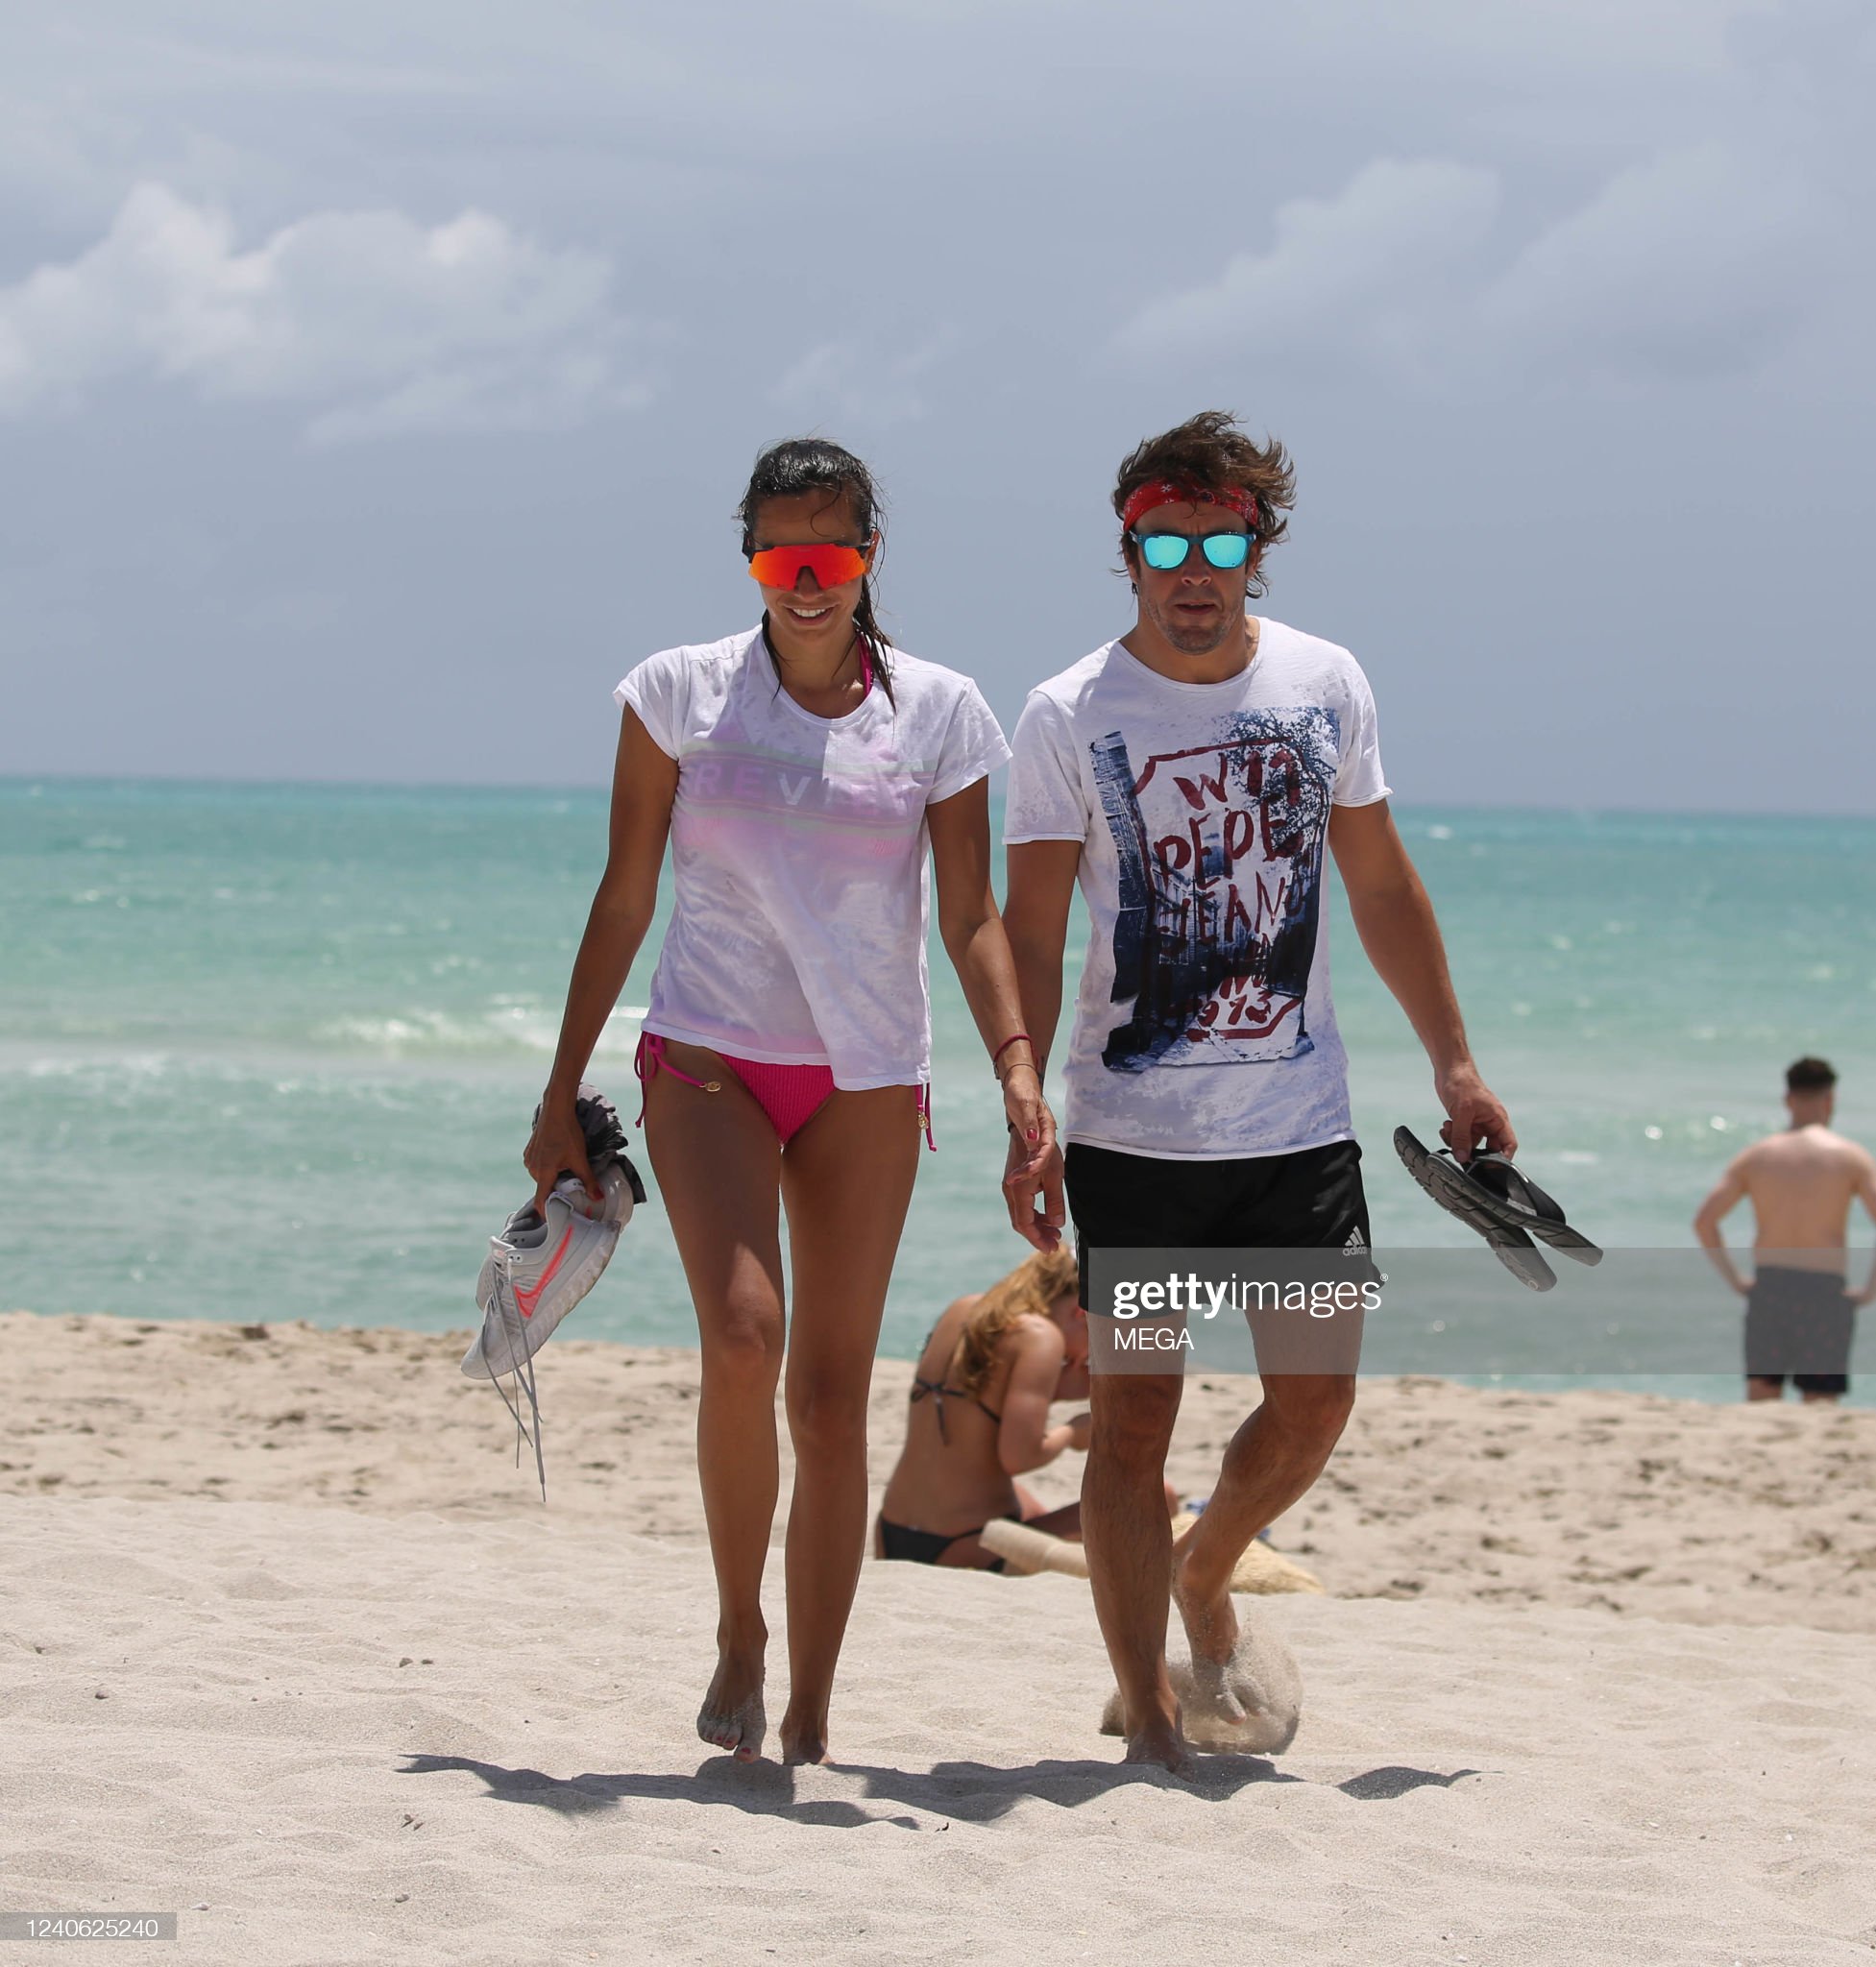 Miami_beach22-25.jpg